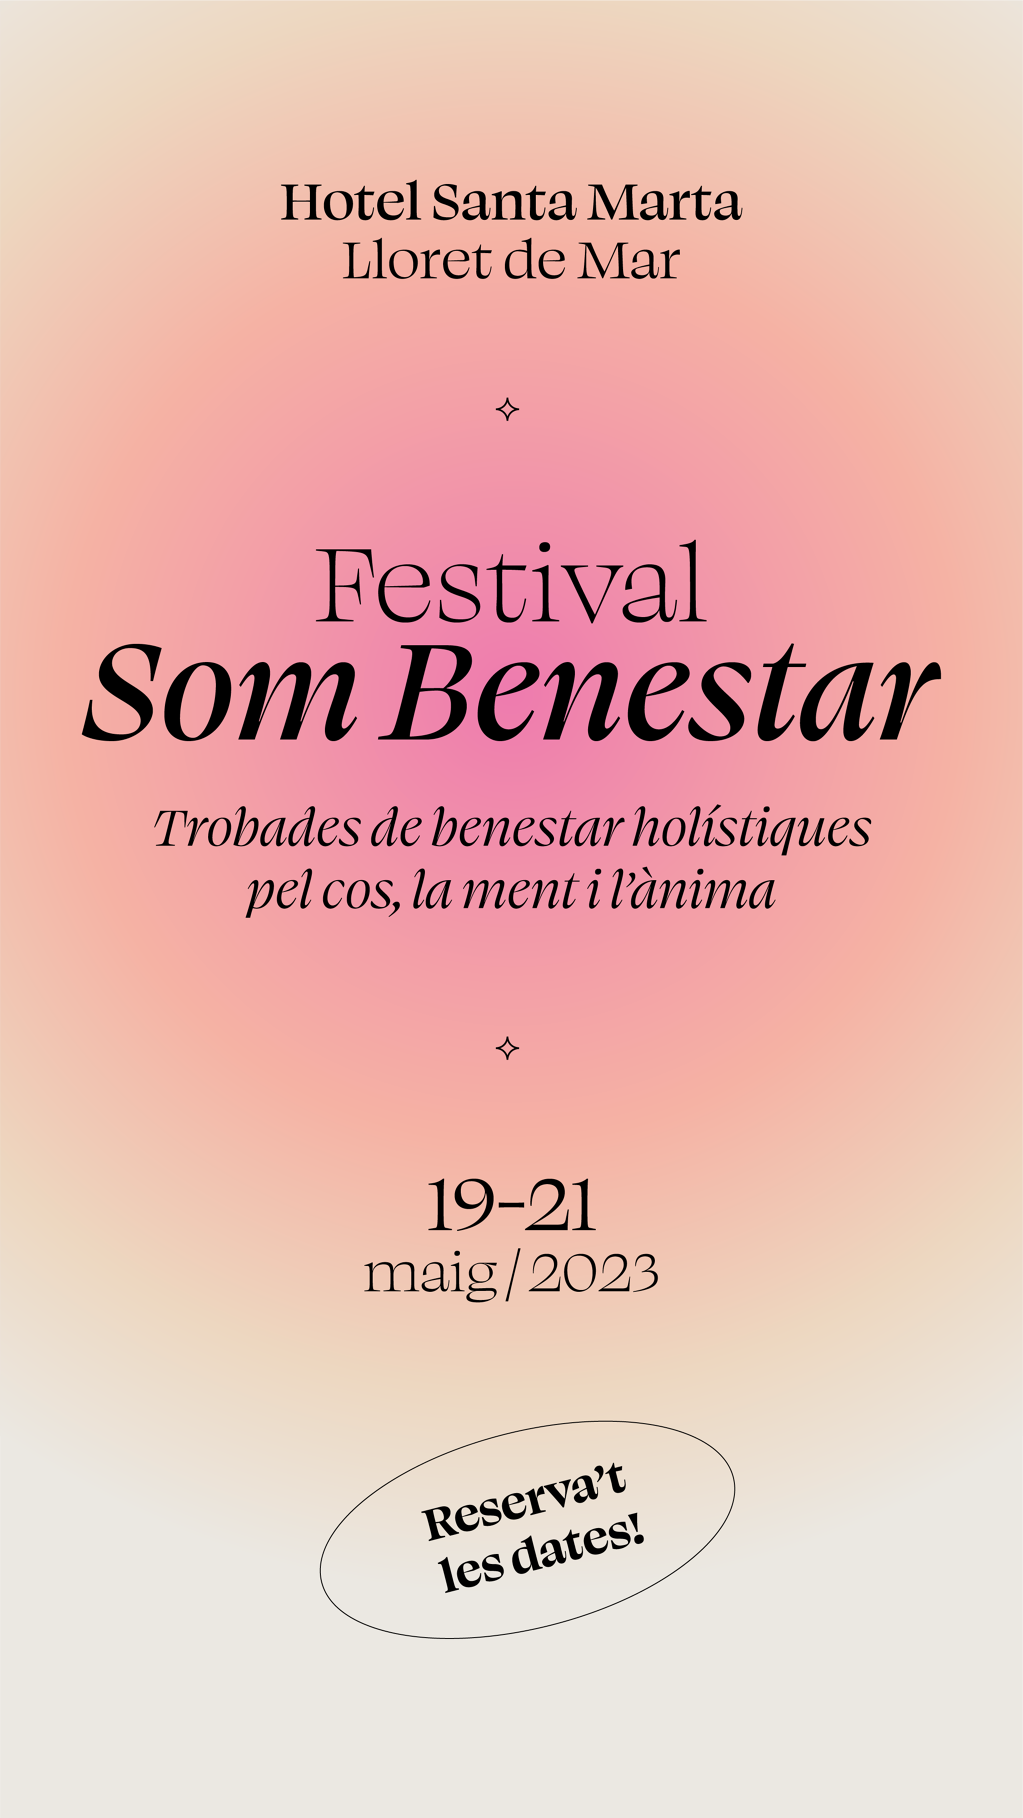 festival-som-benestar-buy-tickets-tickets-lloret-de-mar